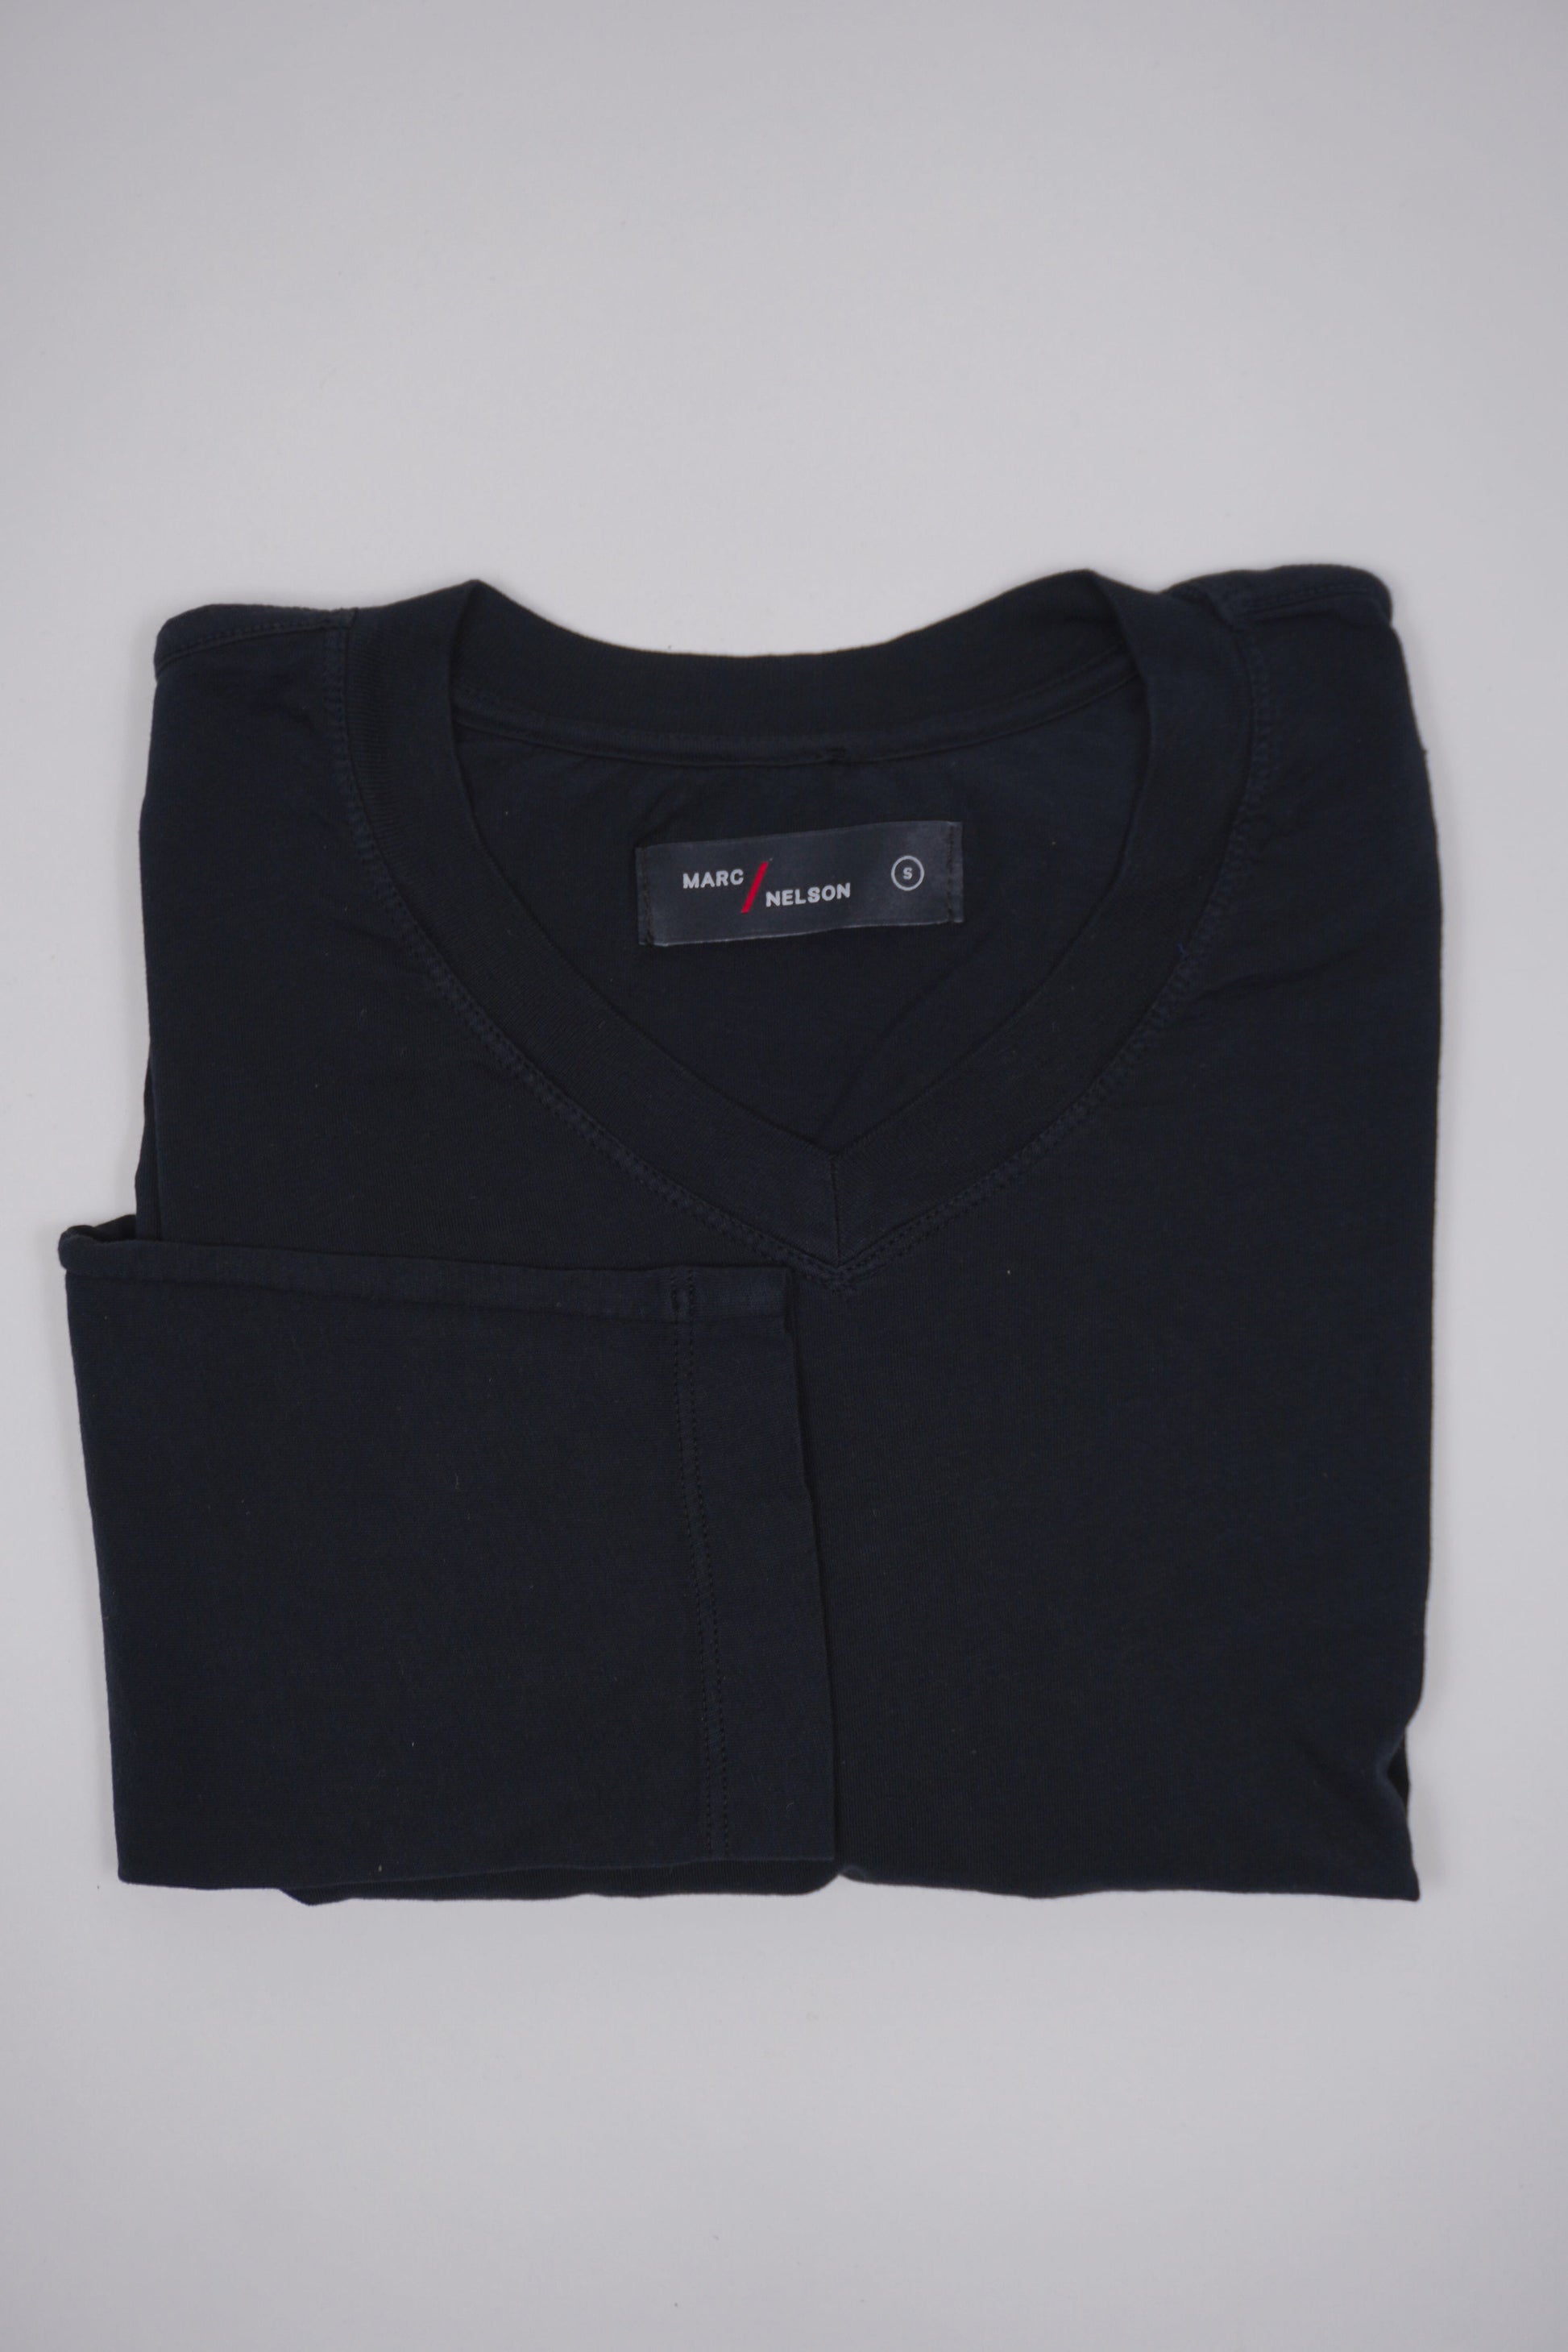 Marc Nelson men's black t-shirt, folded.